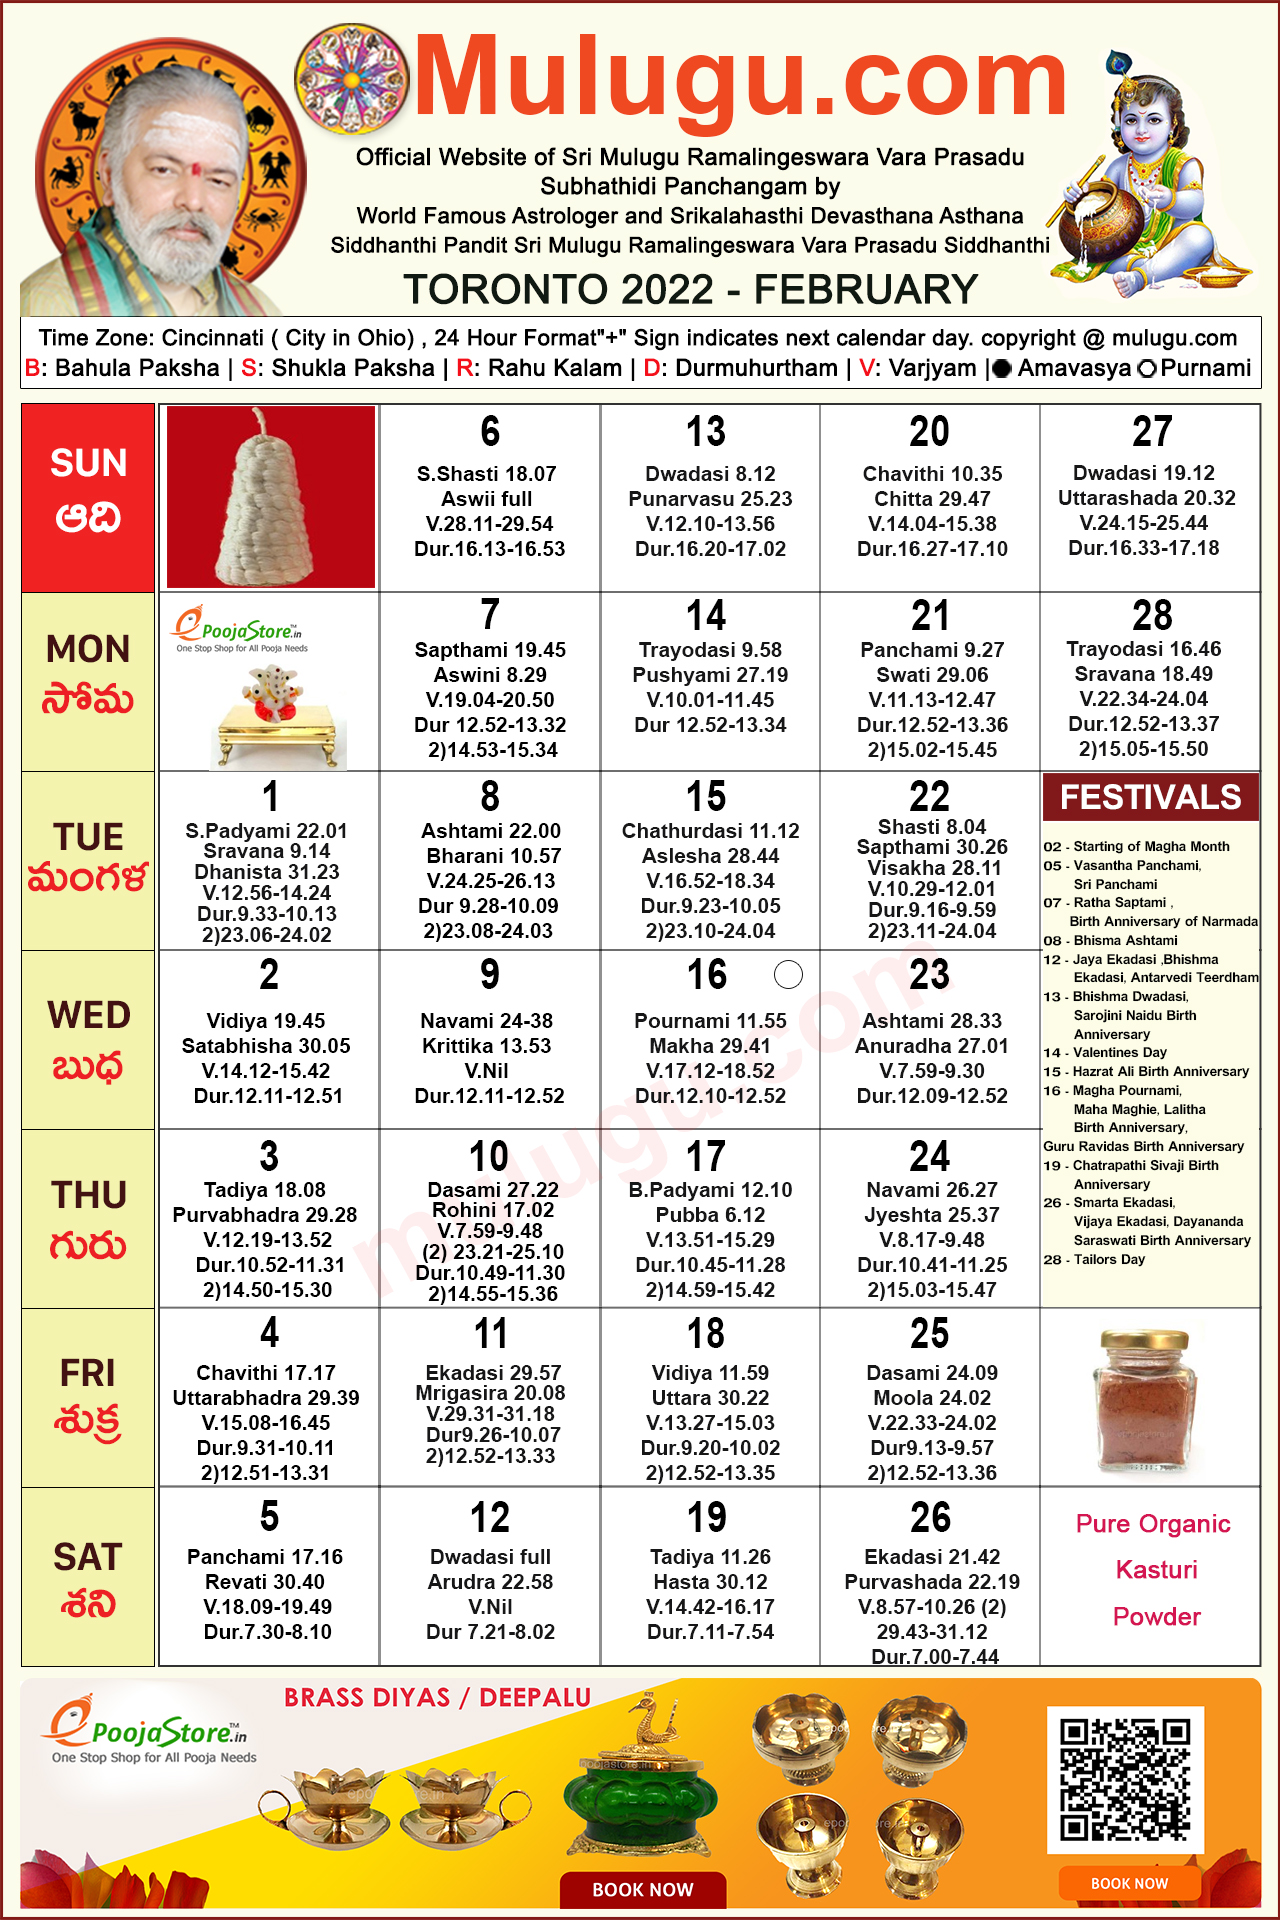 Telugu Calendar 2022 February Toronto Telugu Calendar 2022 February | Mulugu Calendars | Telugu Calendar  | Telugu Calendar 2022- 2022 | Telugu Subhathidi Calendar 2022 | Calendar  2022 | Subhathidi Calendar 2022 Toronto Calendar | 2022 Los Angeles 2022 |  Sydney Calendar 2022 ...